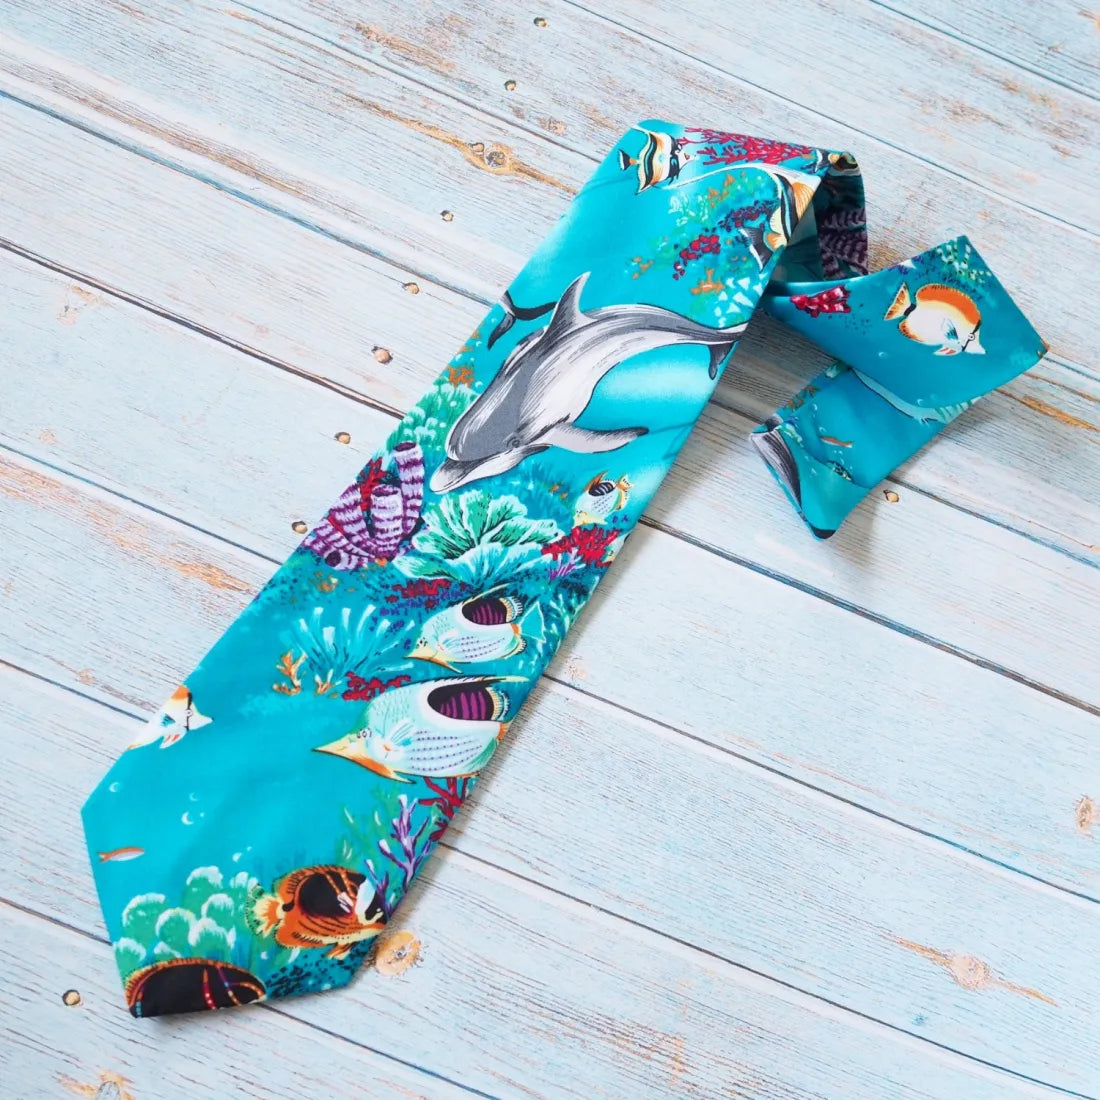 Teal Sealife Hawaiian Necktie - Made In Hawaii